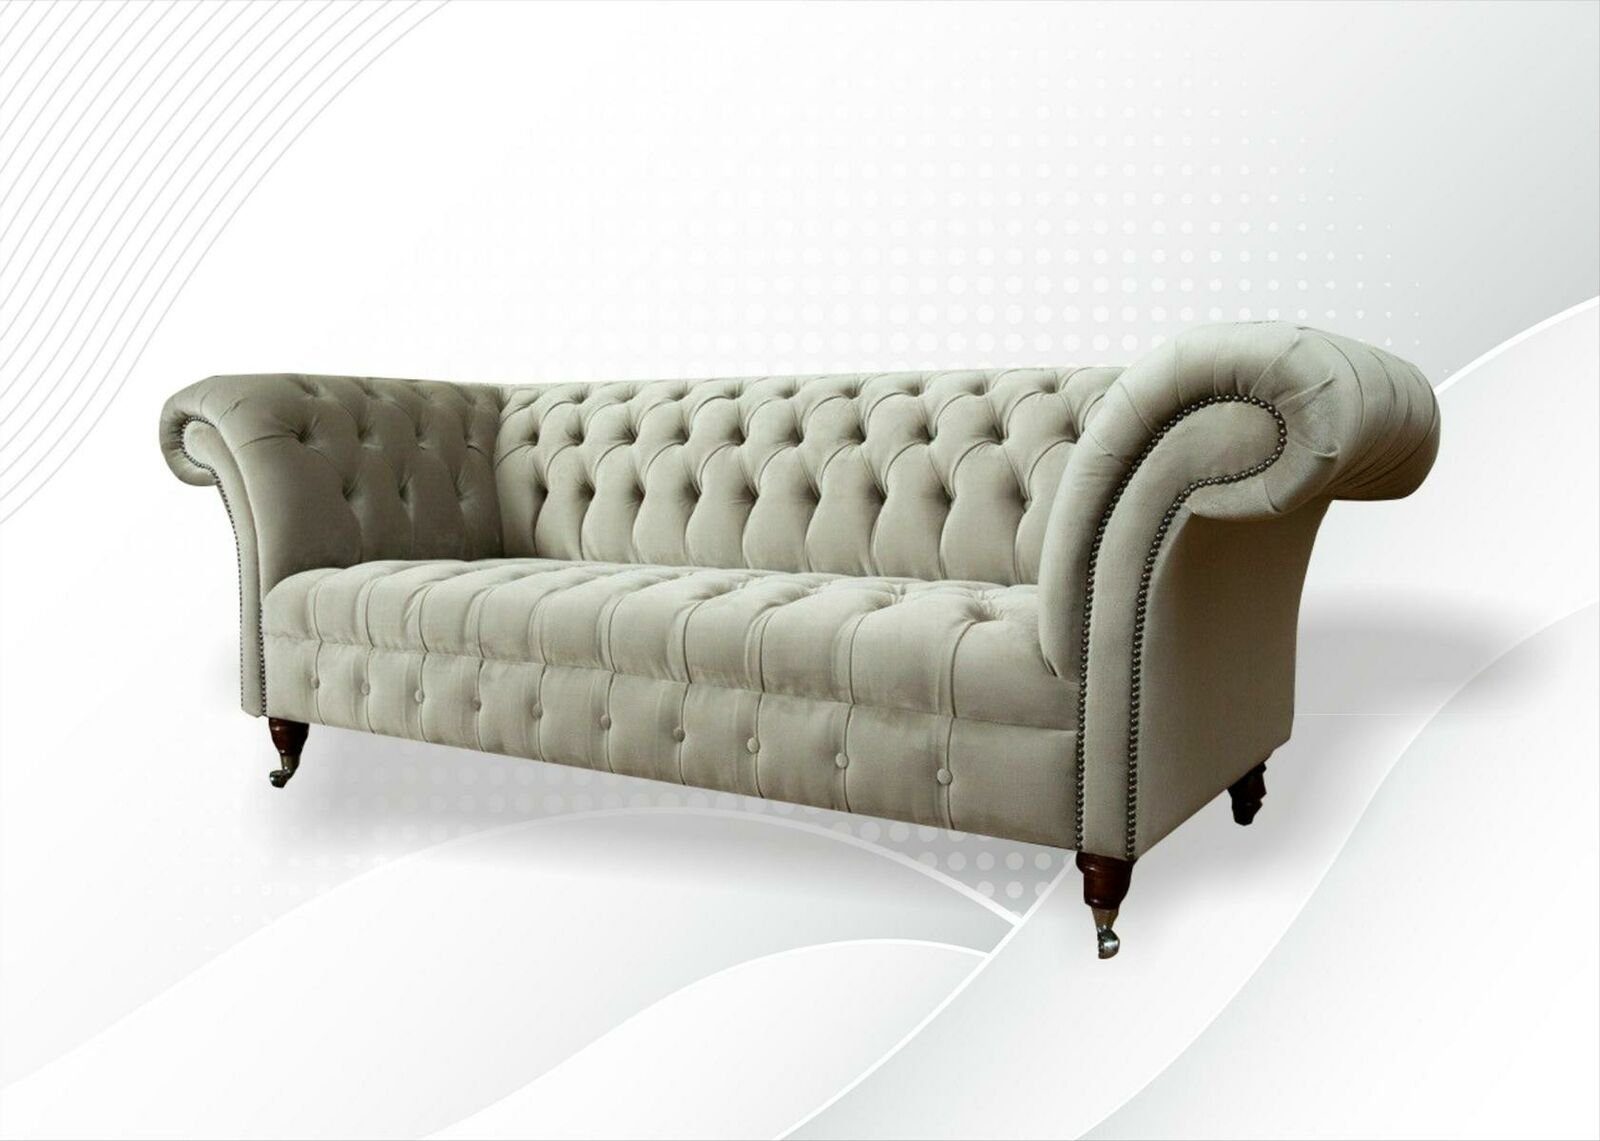 Chesterfield Wohnzimmermöbel JVmoebel Design Modern Europe Chesterfield-Sofa Neu, 3-Sitzer in Taupe Made